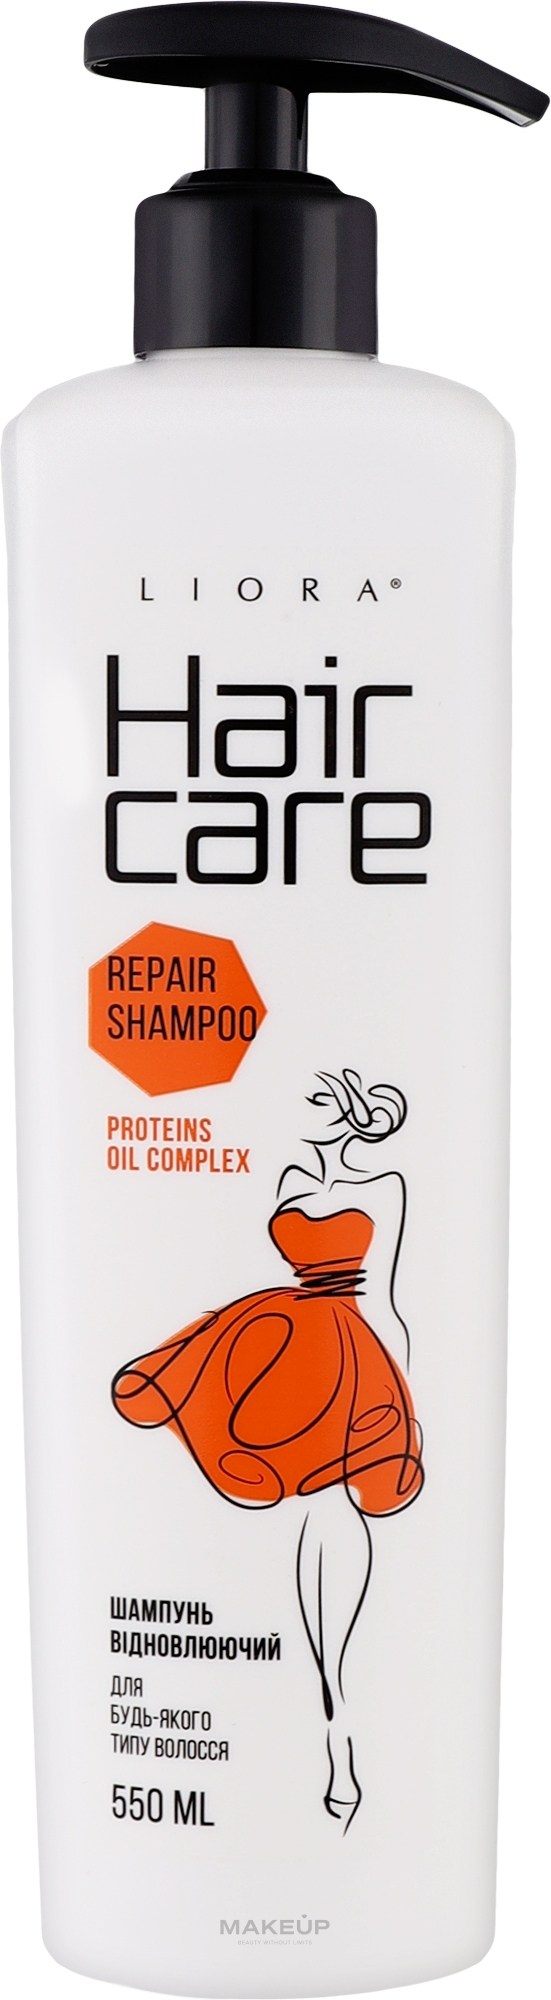 Шампунь відновлюючий для будь-якого типу волосся - Liora Hair Care Repair Shampoo — фото 550ml